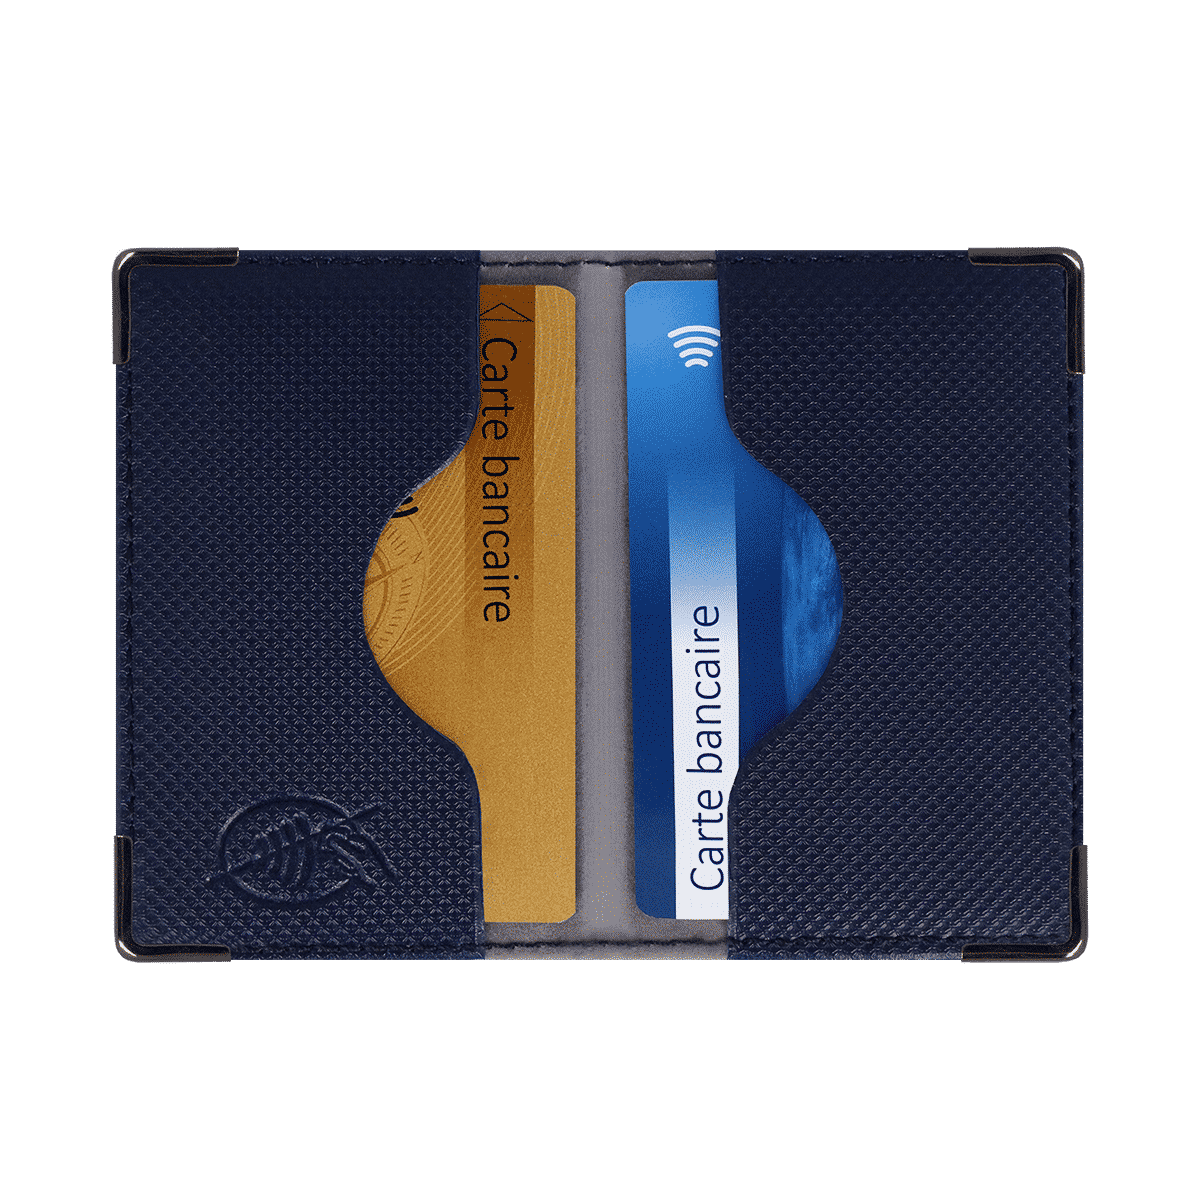 Color pop® Etui 2 Cartes bancaires blindé Marron-Gris Metal 9,7 x 6,5 x 0,5 cm Protection des données bancaires Anti-RFID - Fabrication française en PVC 